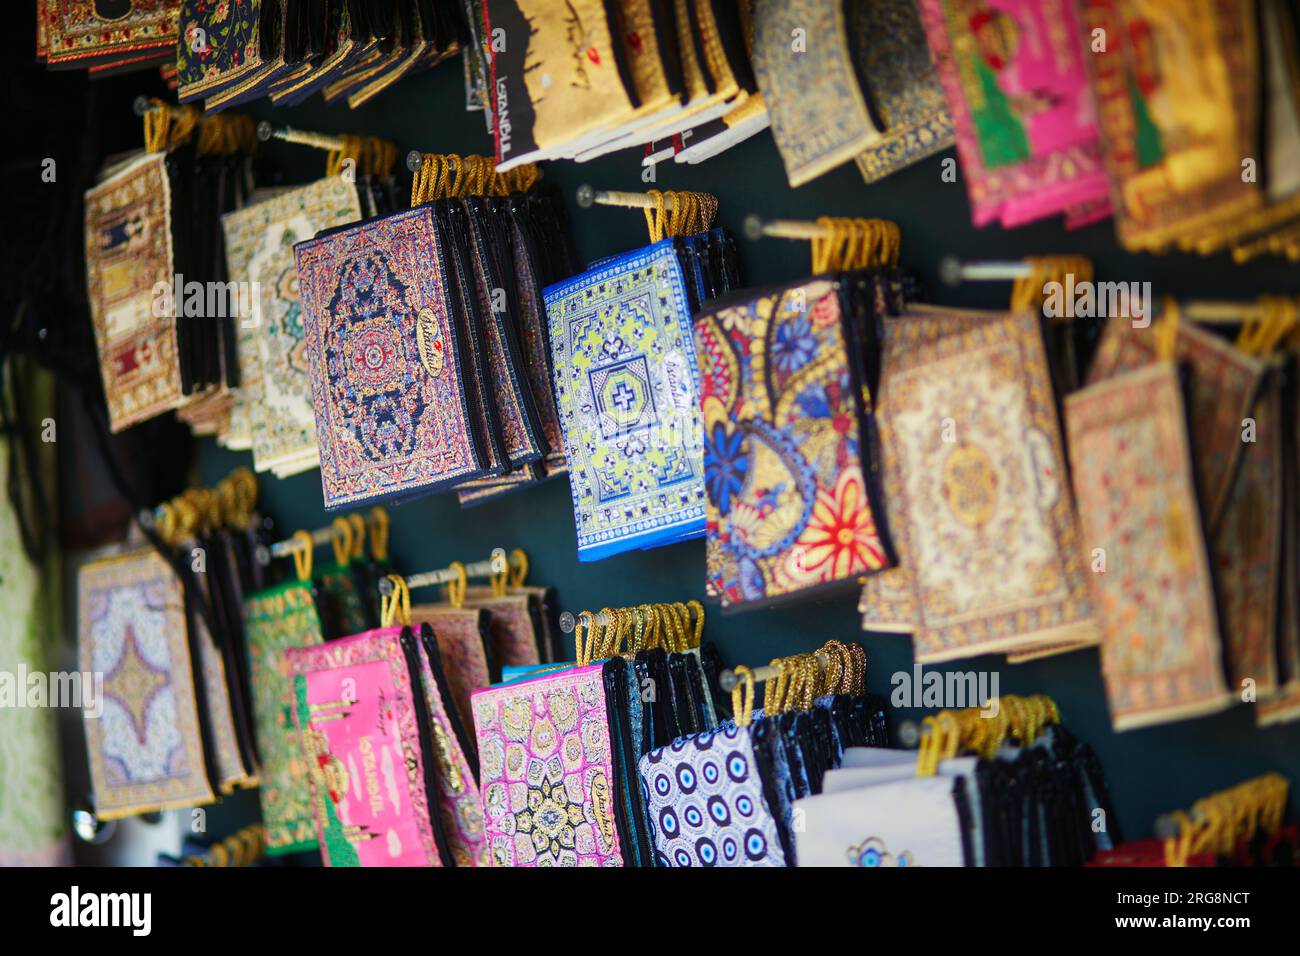 Vari tappetini per mouse in tessuto colorato o borse a mano sul tradizionale mercato turco di Istanbul, Turchia Foto Stock